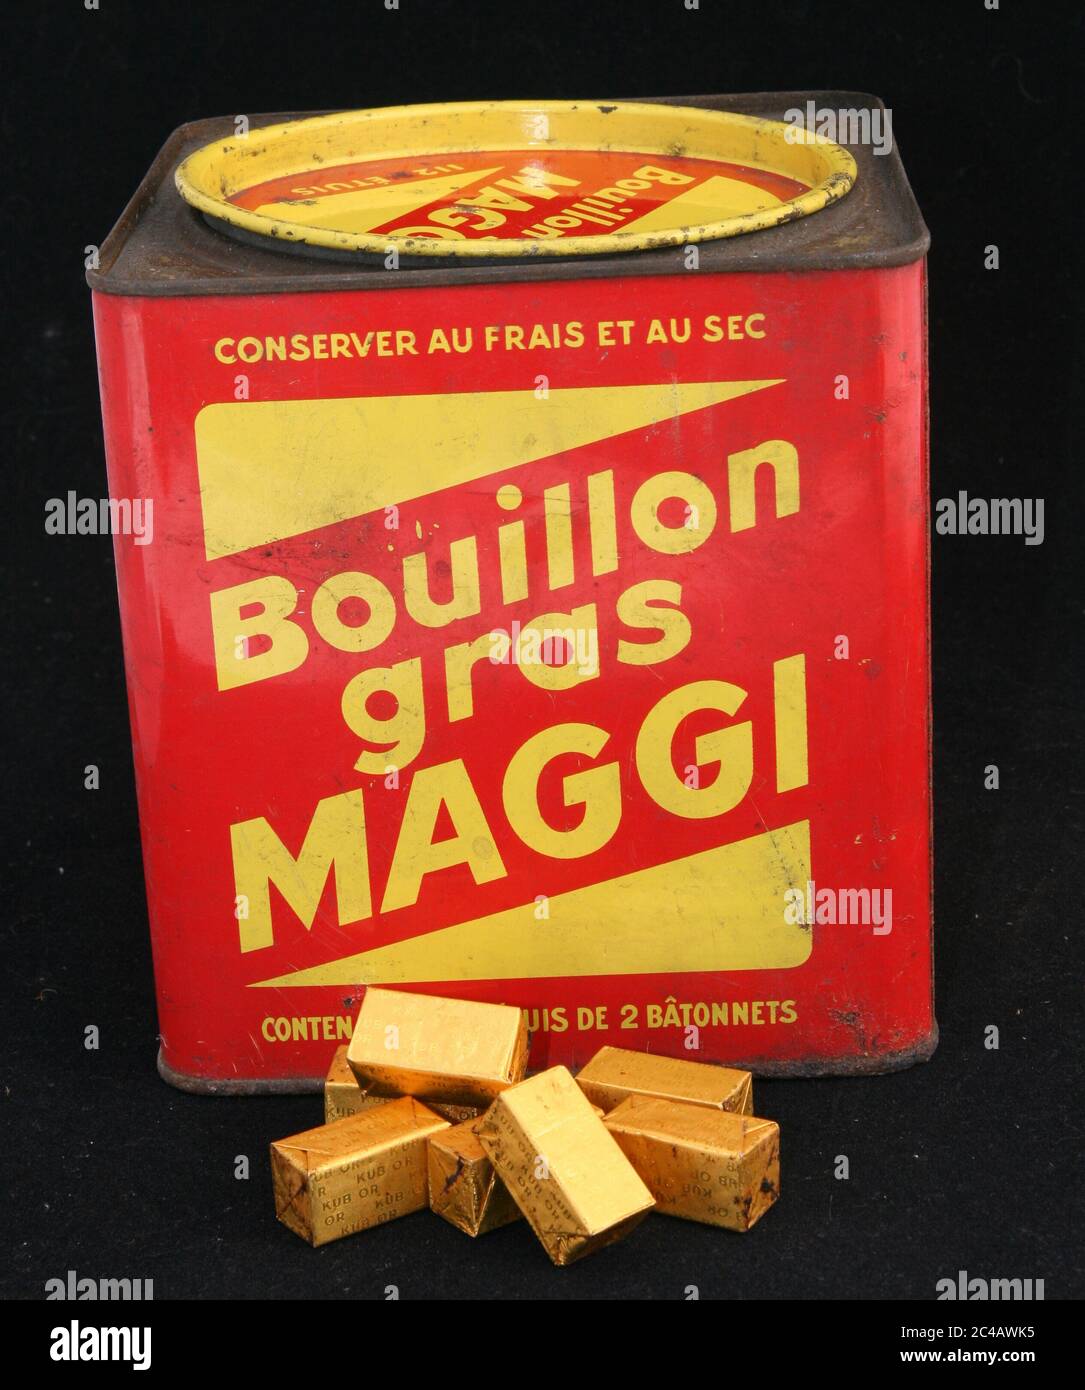 Boites de bouillon gras Maggi vers 1950 / boîtes de bouillon gras Maggi vers 1950 Banque D'Images